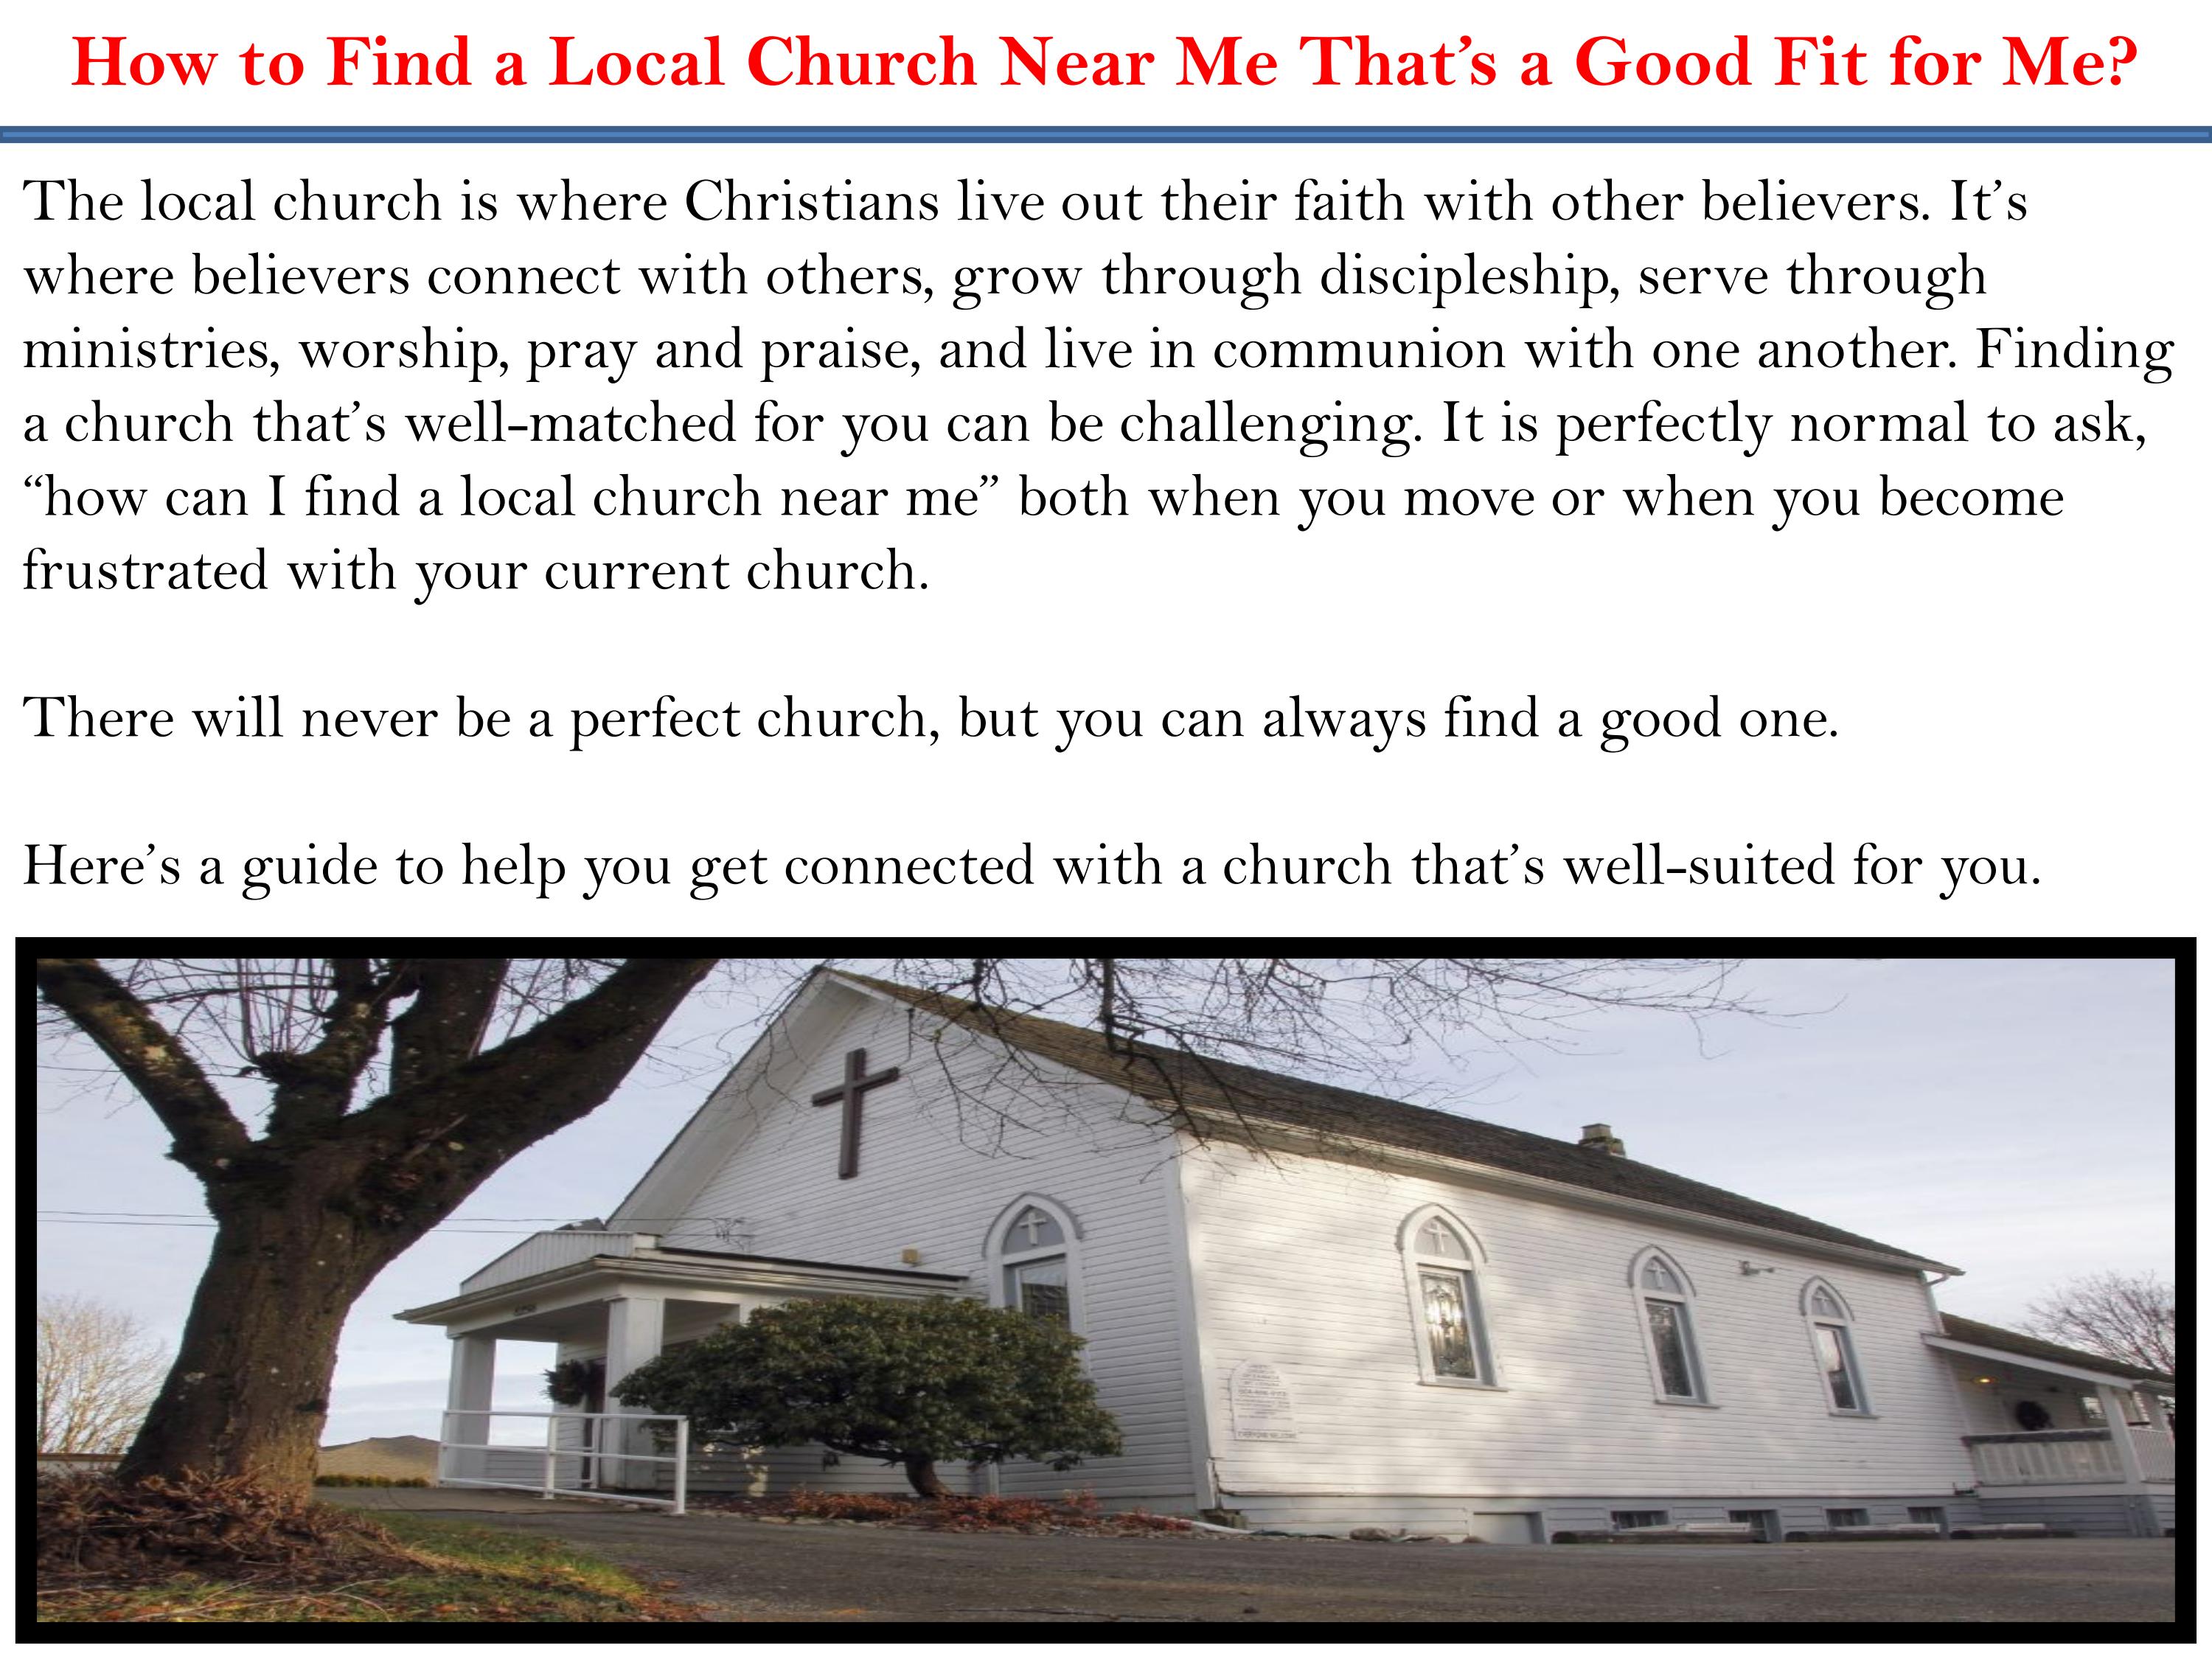 როგორ მოვძებნოთ ეკლესია, რომელიც თქვენთვის შესაფერისია